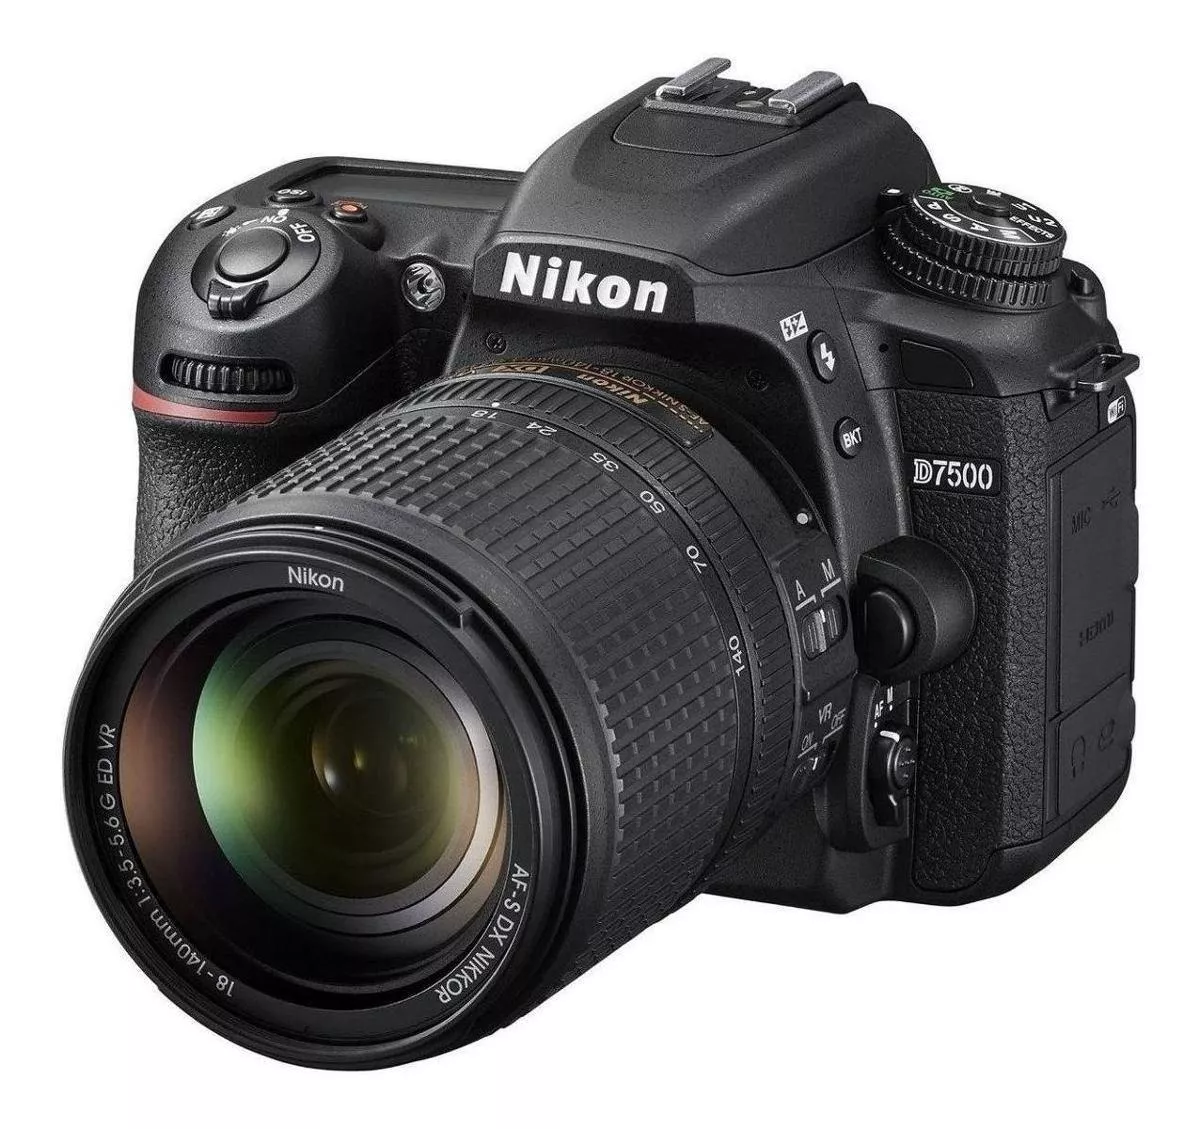  Nikon Kit D7500 + Lente 18-140mm Ed Vr Dslr Color Negro